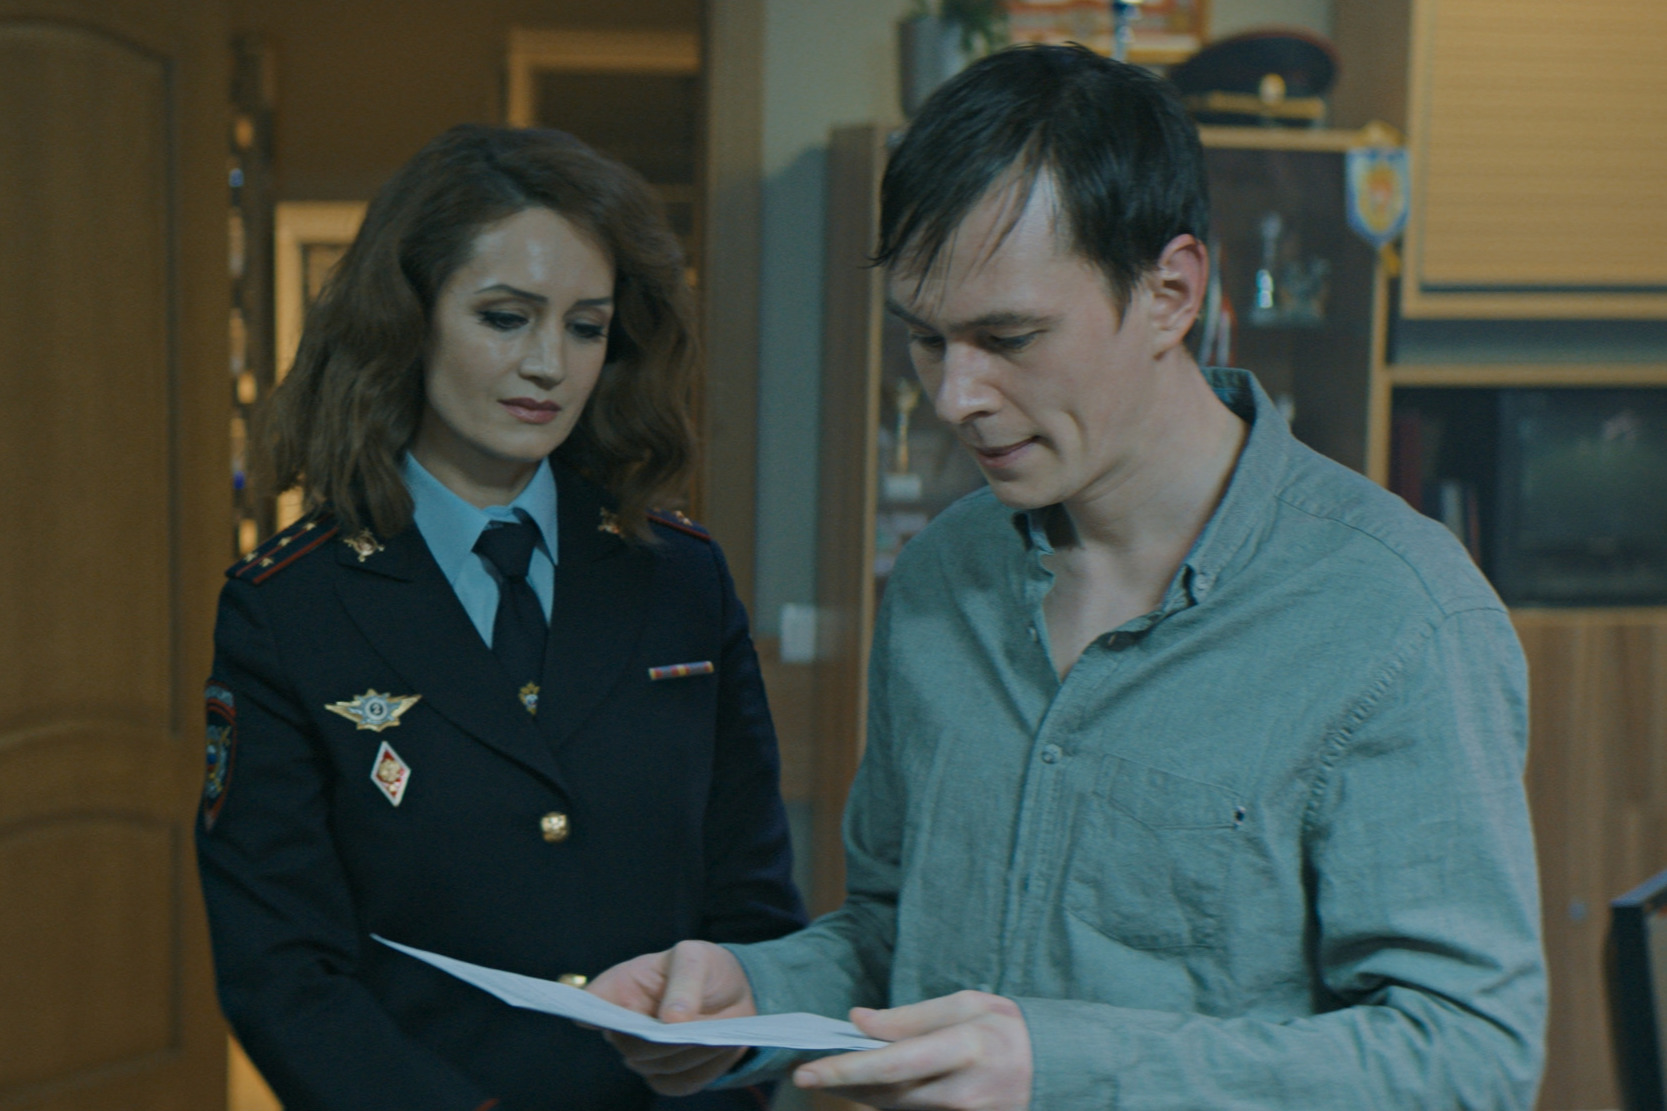 Виктория Исакова здесь играет полицейского, а Вадик Королев — задержанного